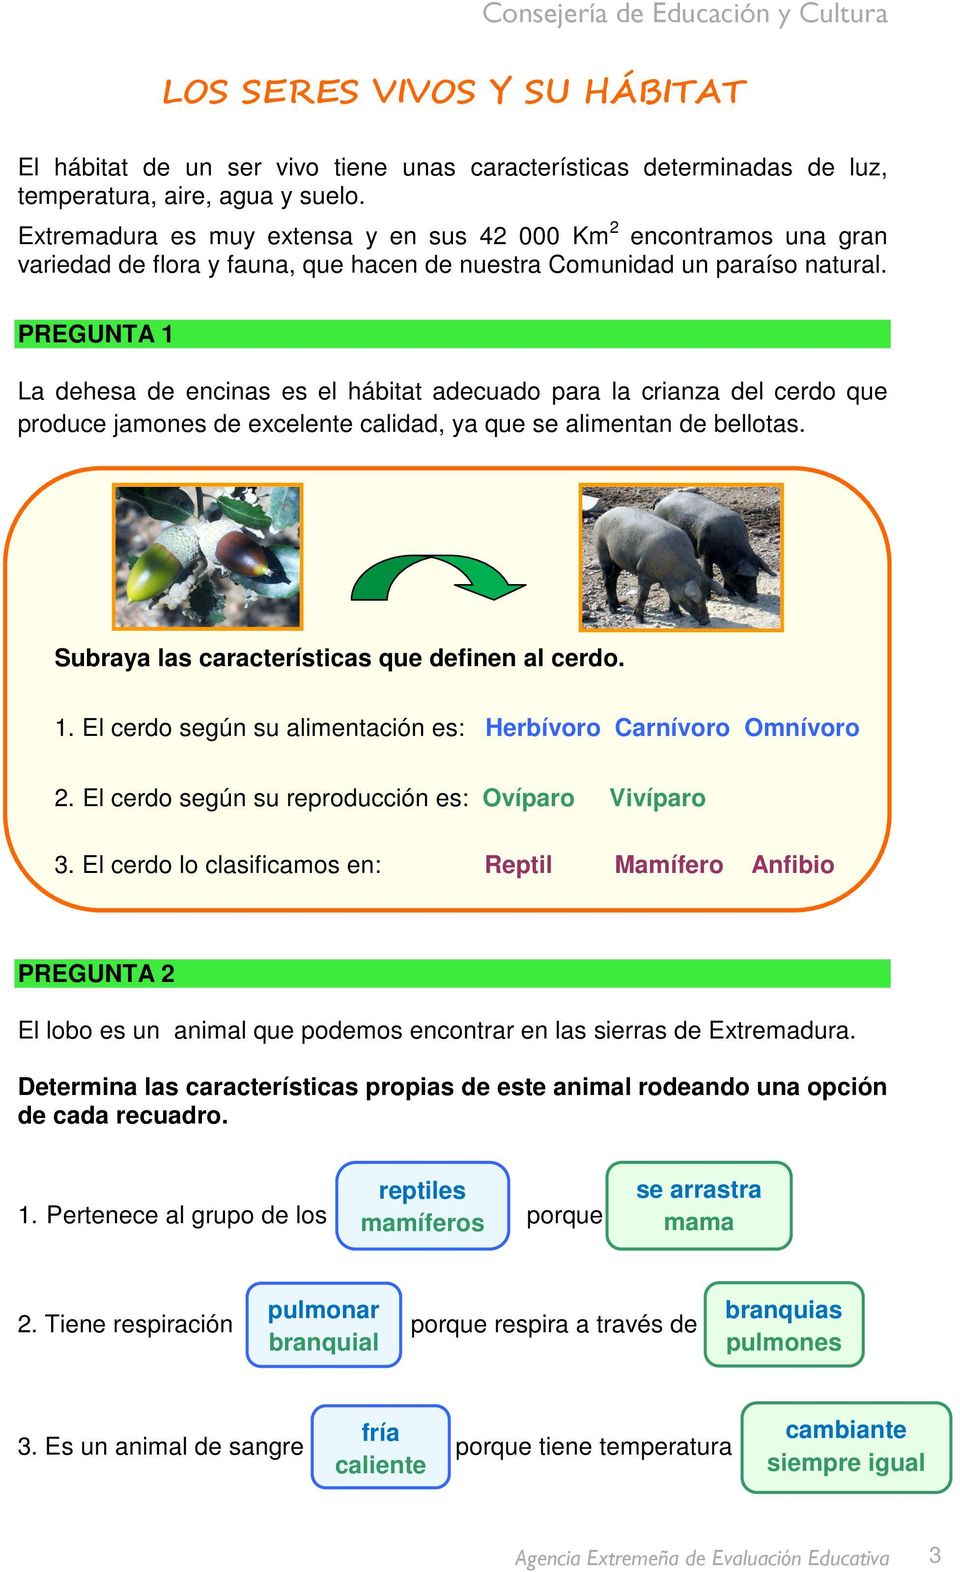 PREGUNTA 1 La dehesa de encinas es el hábitat adecuado para la crianza del cerdo que produce jamones de excelente calidad, ya que se alimentan de bellotas.